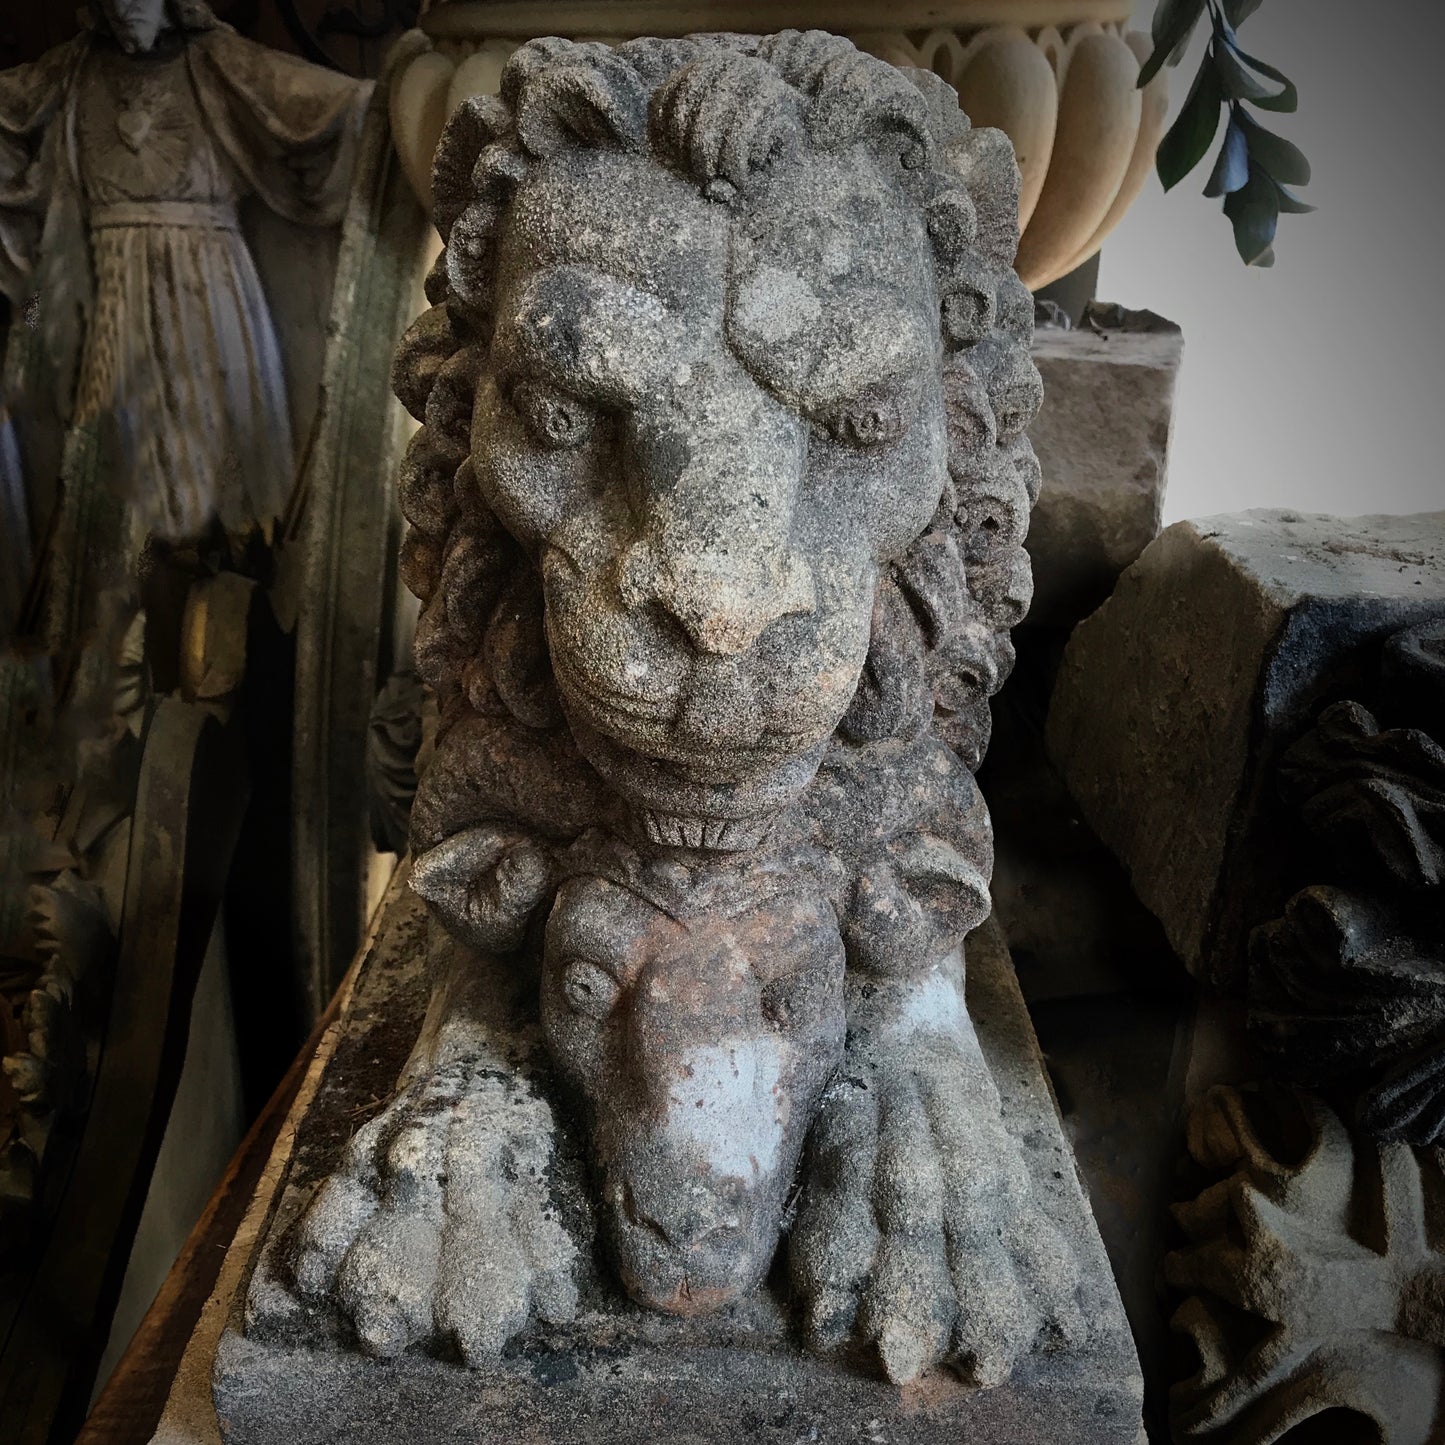 Pouncing Lion Sculpture